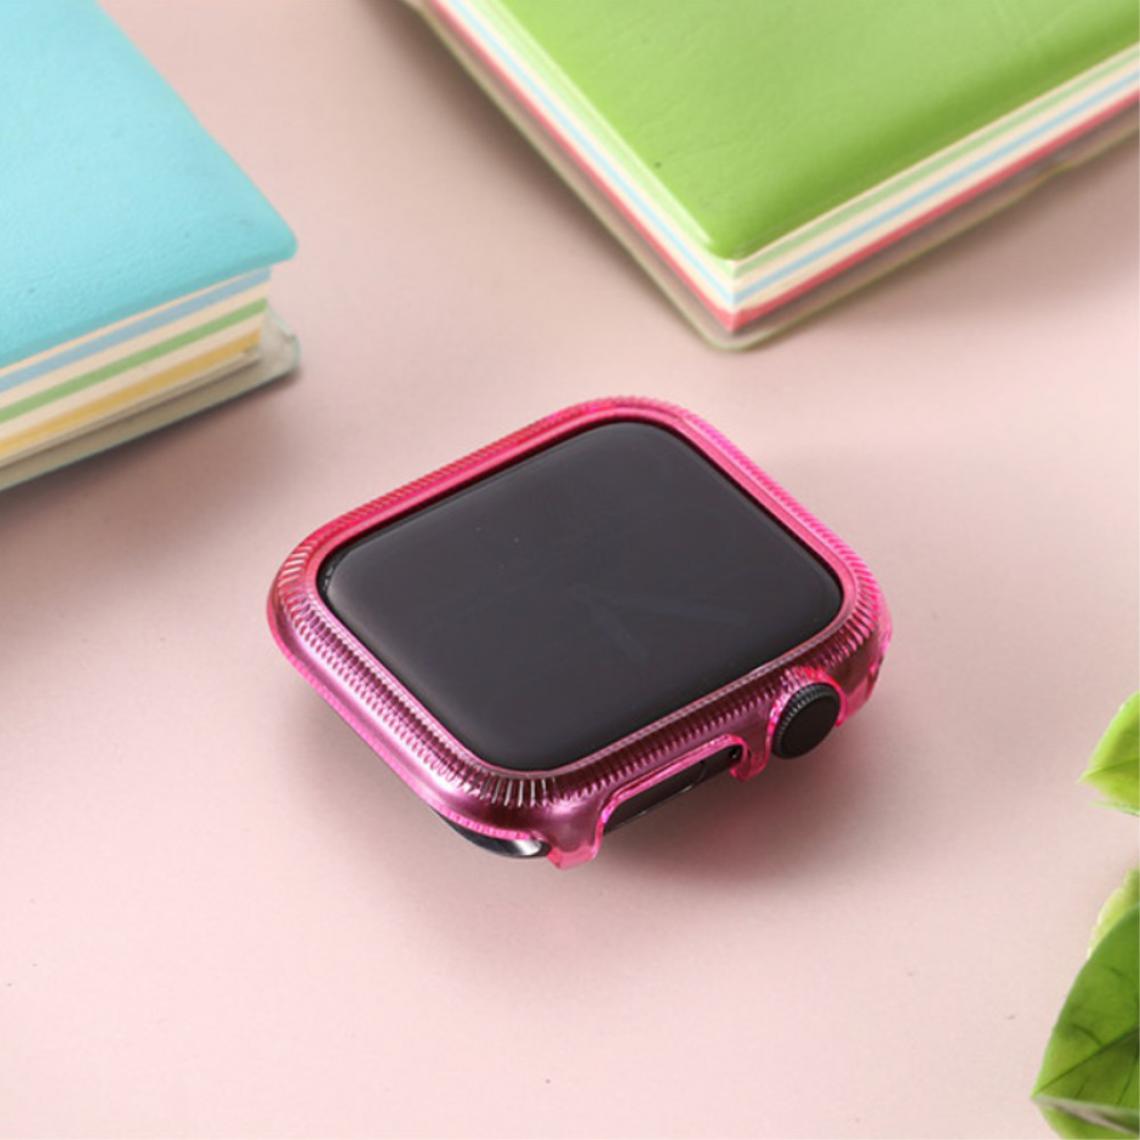 Other - Coque en TPU cadre coloré rose pour votre Apple Watch Series 6/SE/5/4 40mm - Accessoires bracelet connecté